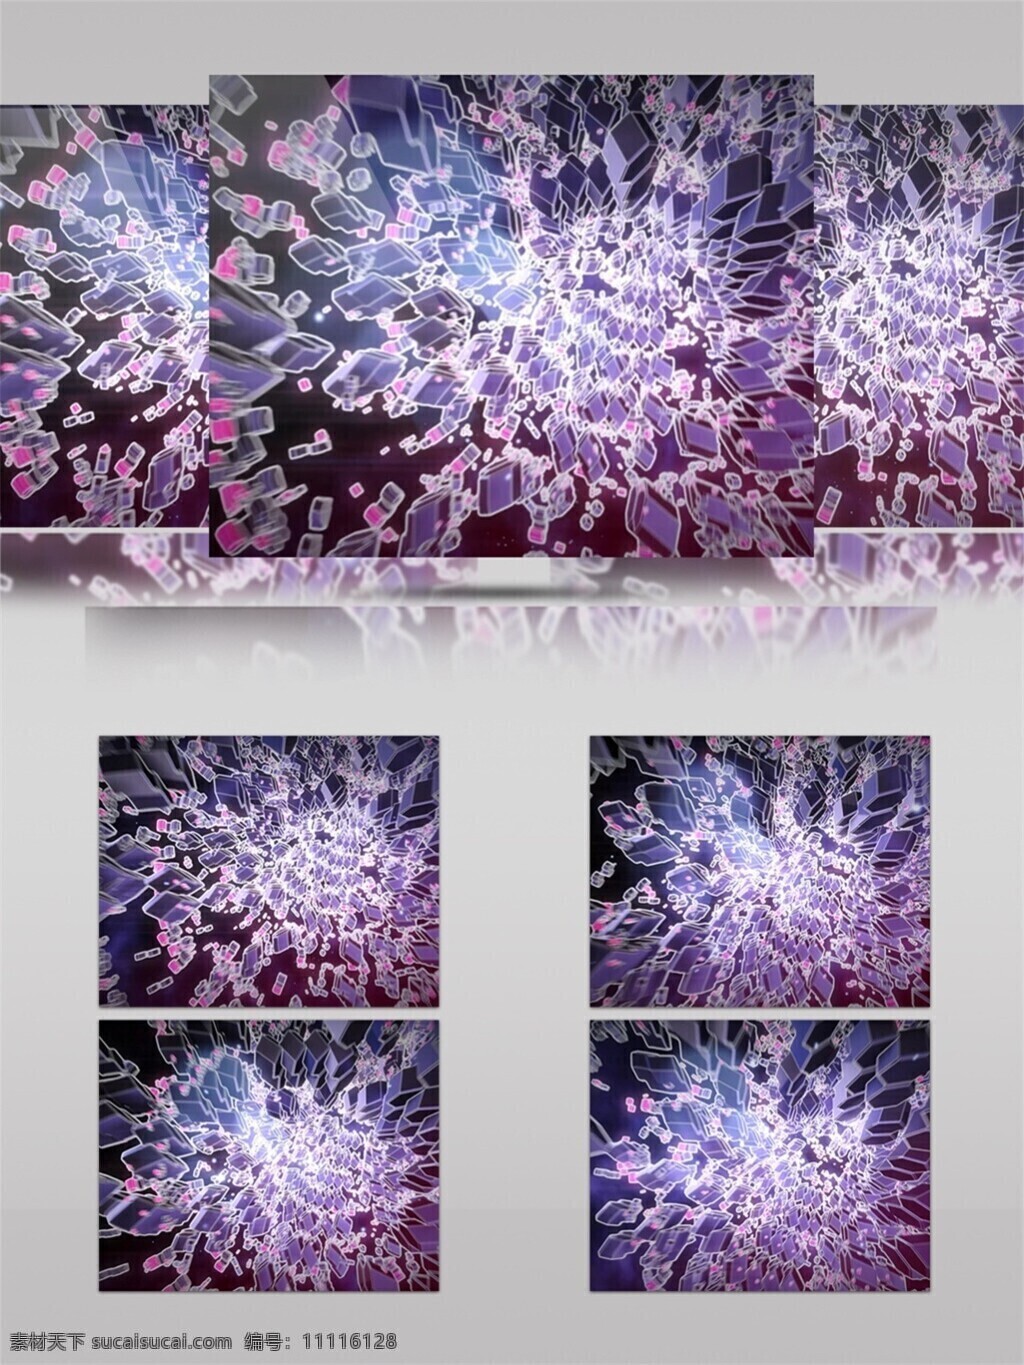 高清素材 光斑 光景素材 光束 花朵 花蕊 唯美素材 缤纷 樱花 世界 动态 视频